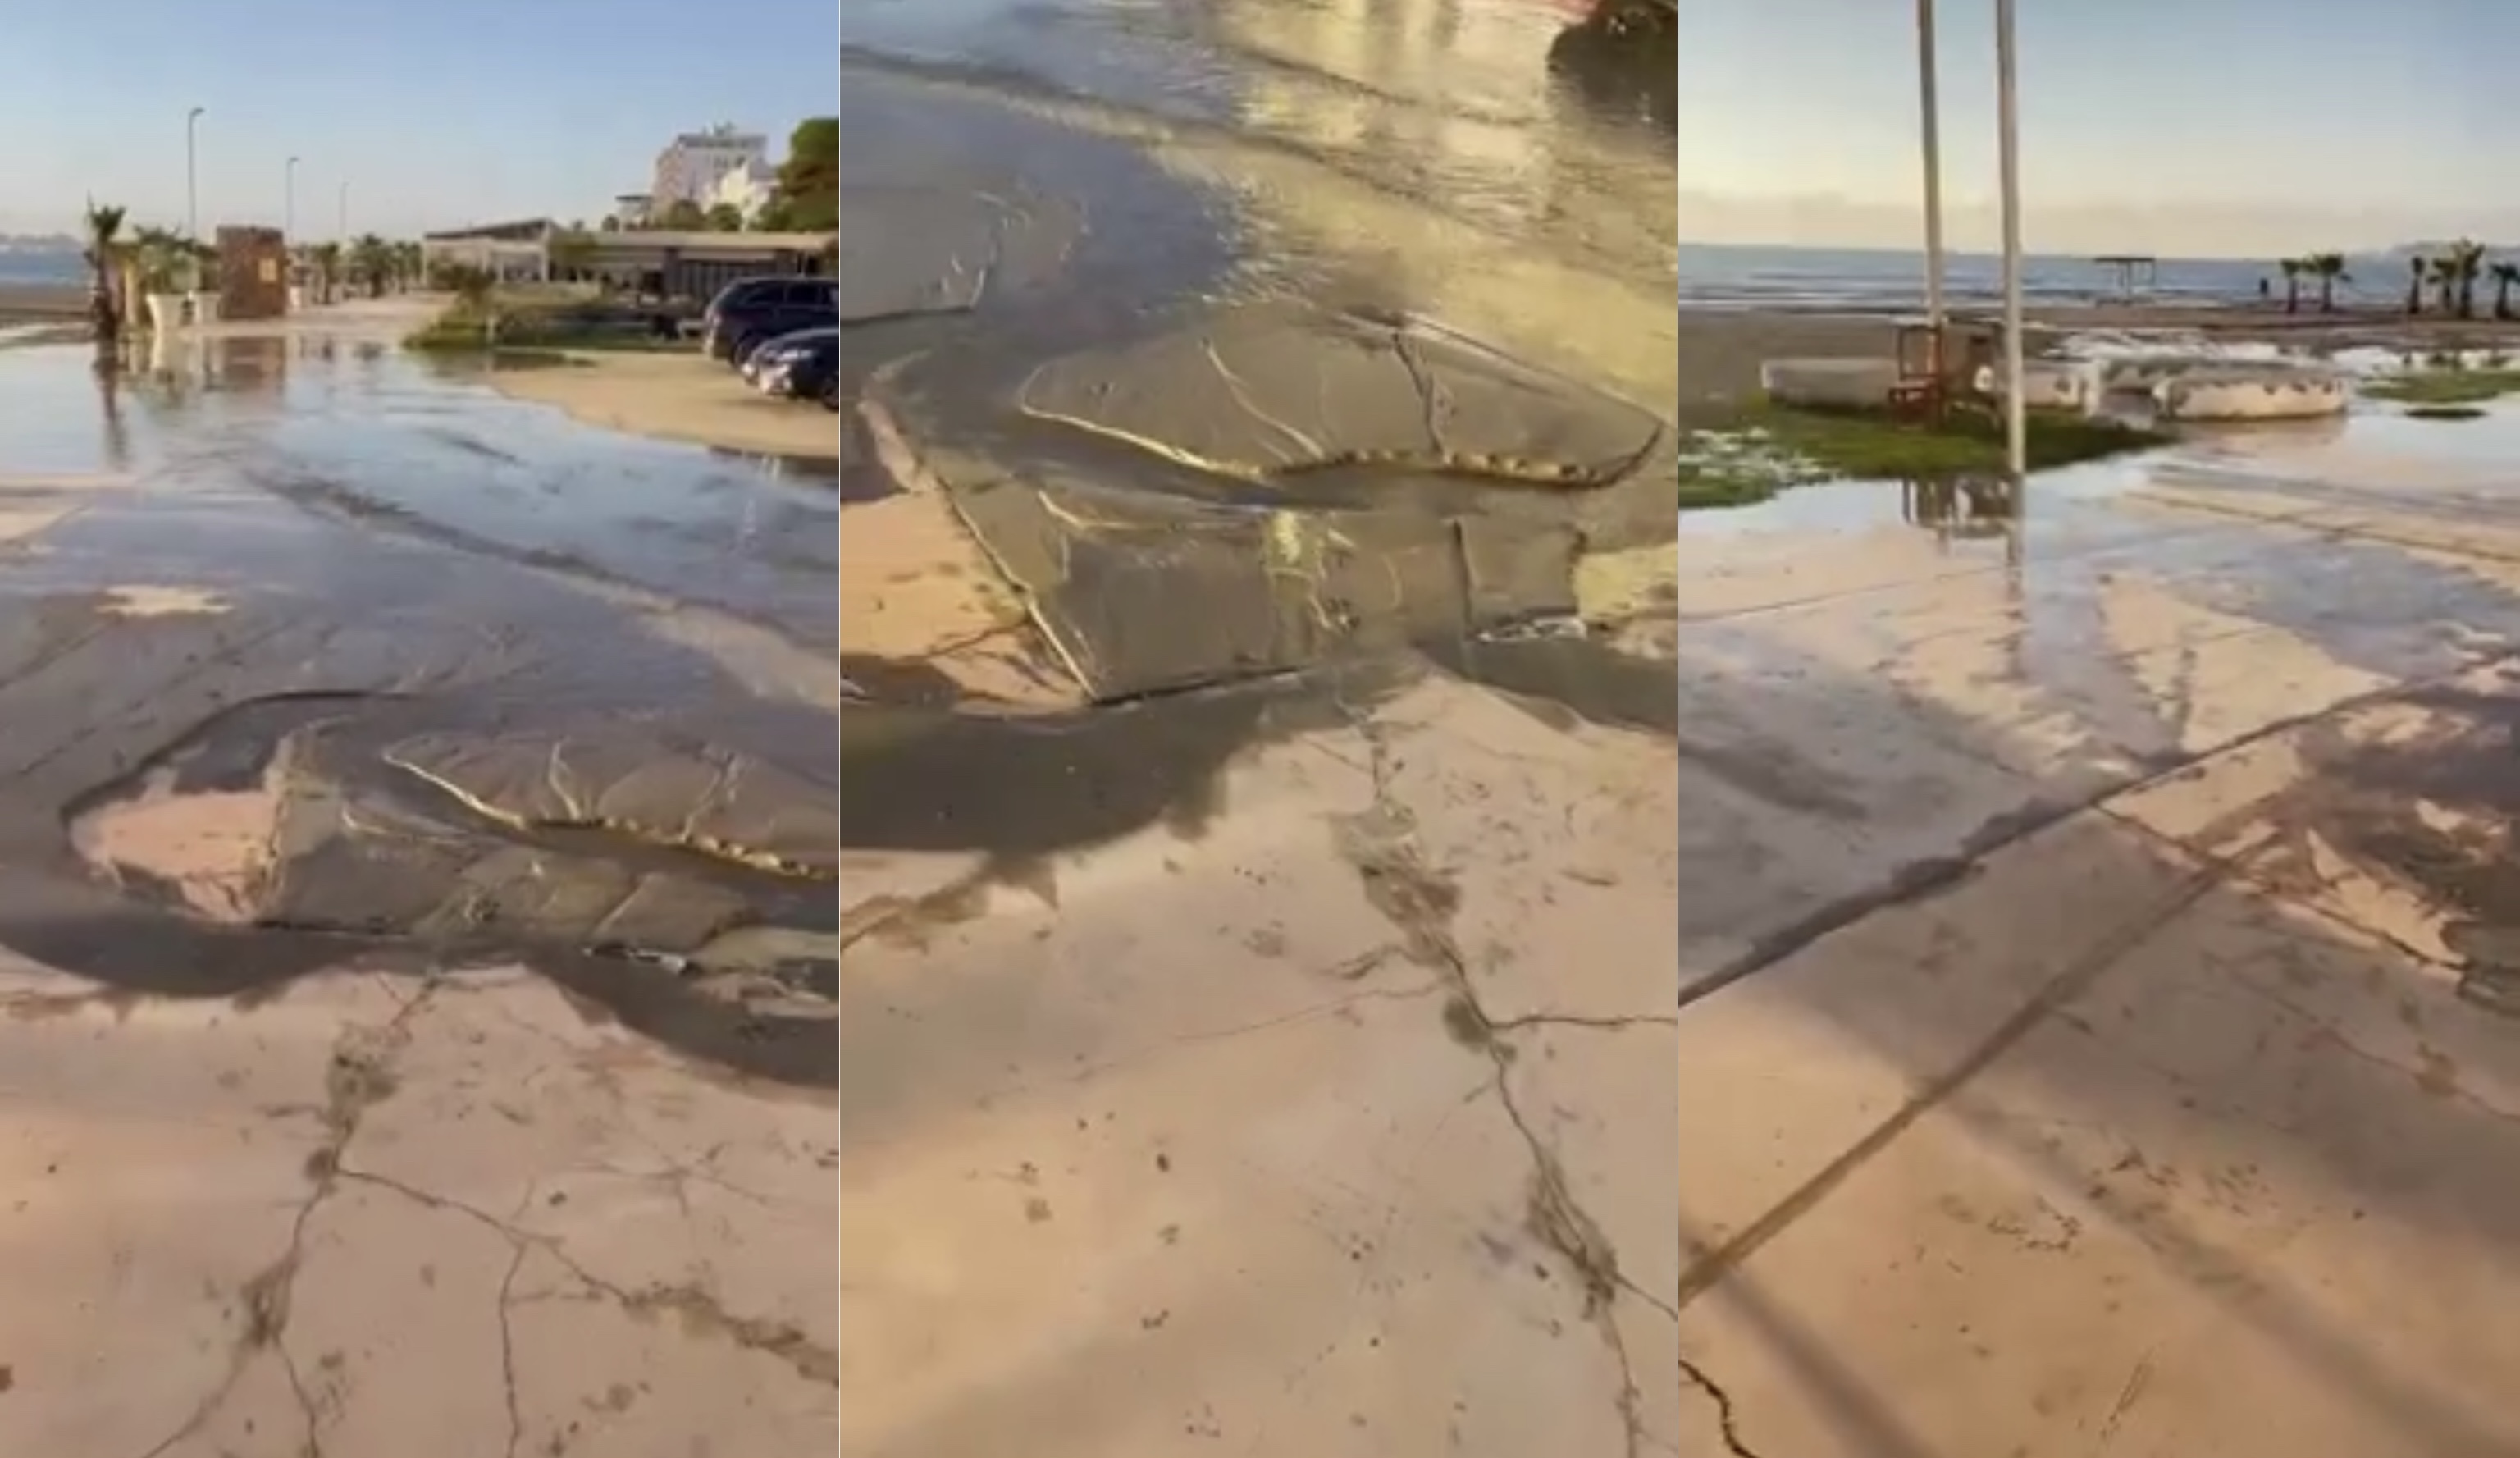 Shëtitorja “Taulantia” në Durrës shkatërrohet nga presioni i ujit, 2,8 milionë € shkojnë dëm